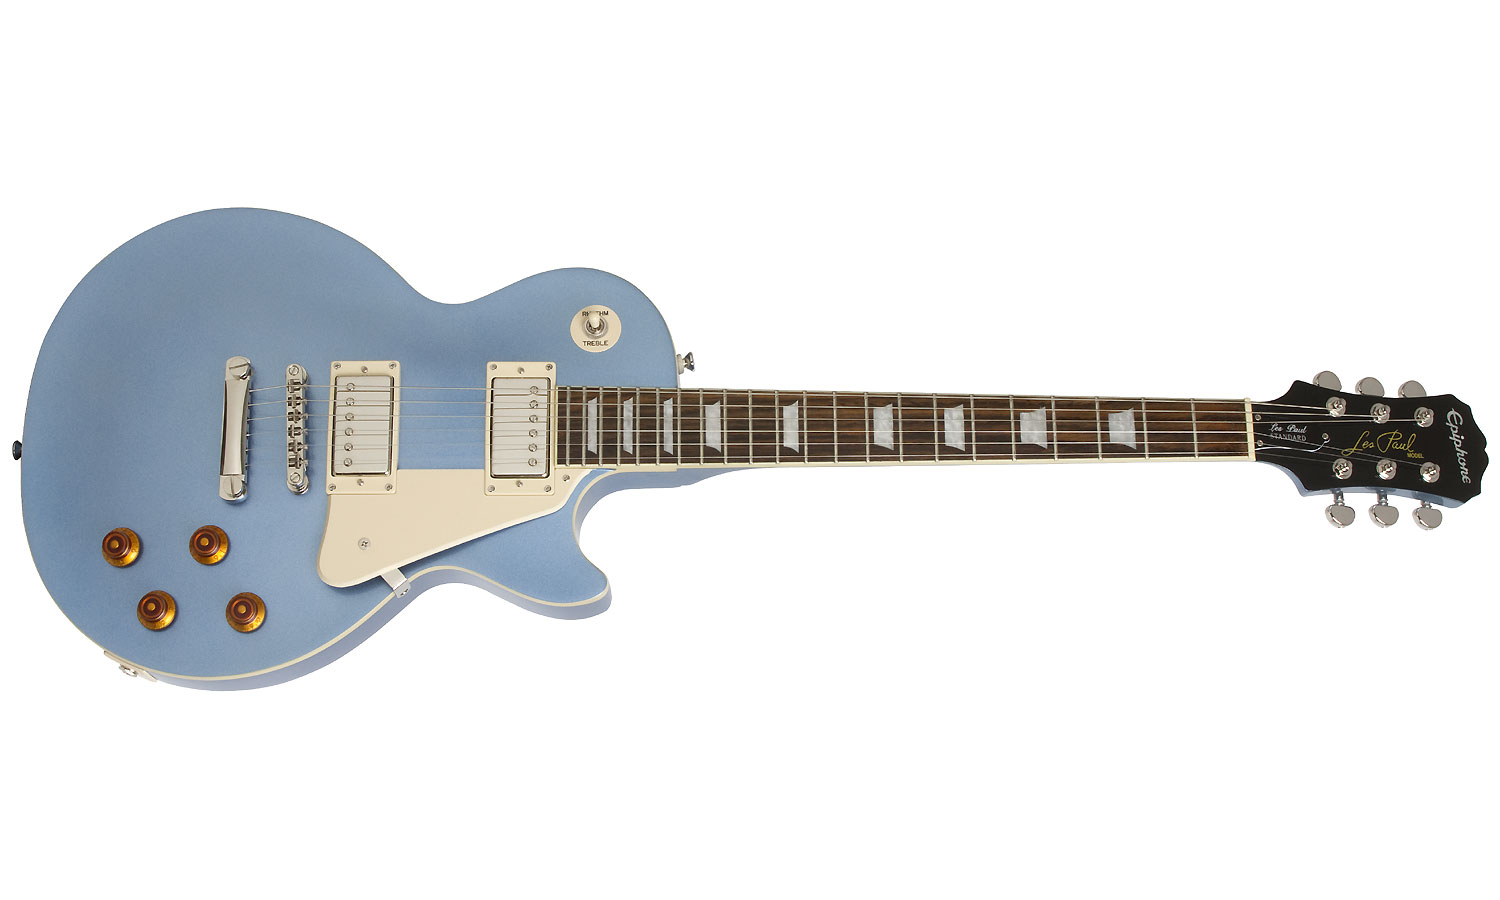 Epiphone Les Paul Standard Hh Ht Pf - Pelham Blue - Guitarra eléctrica de corte único. - Variation 1